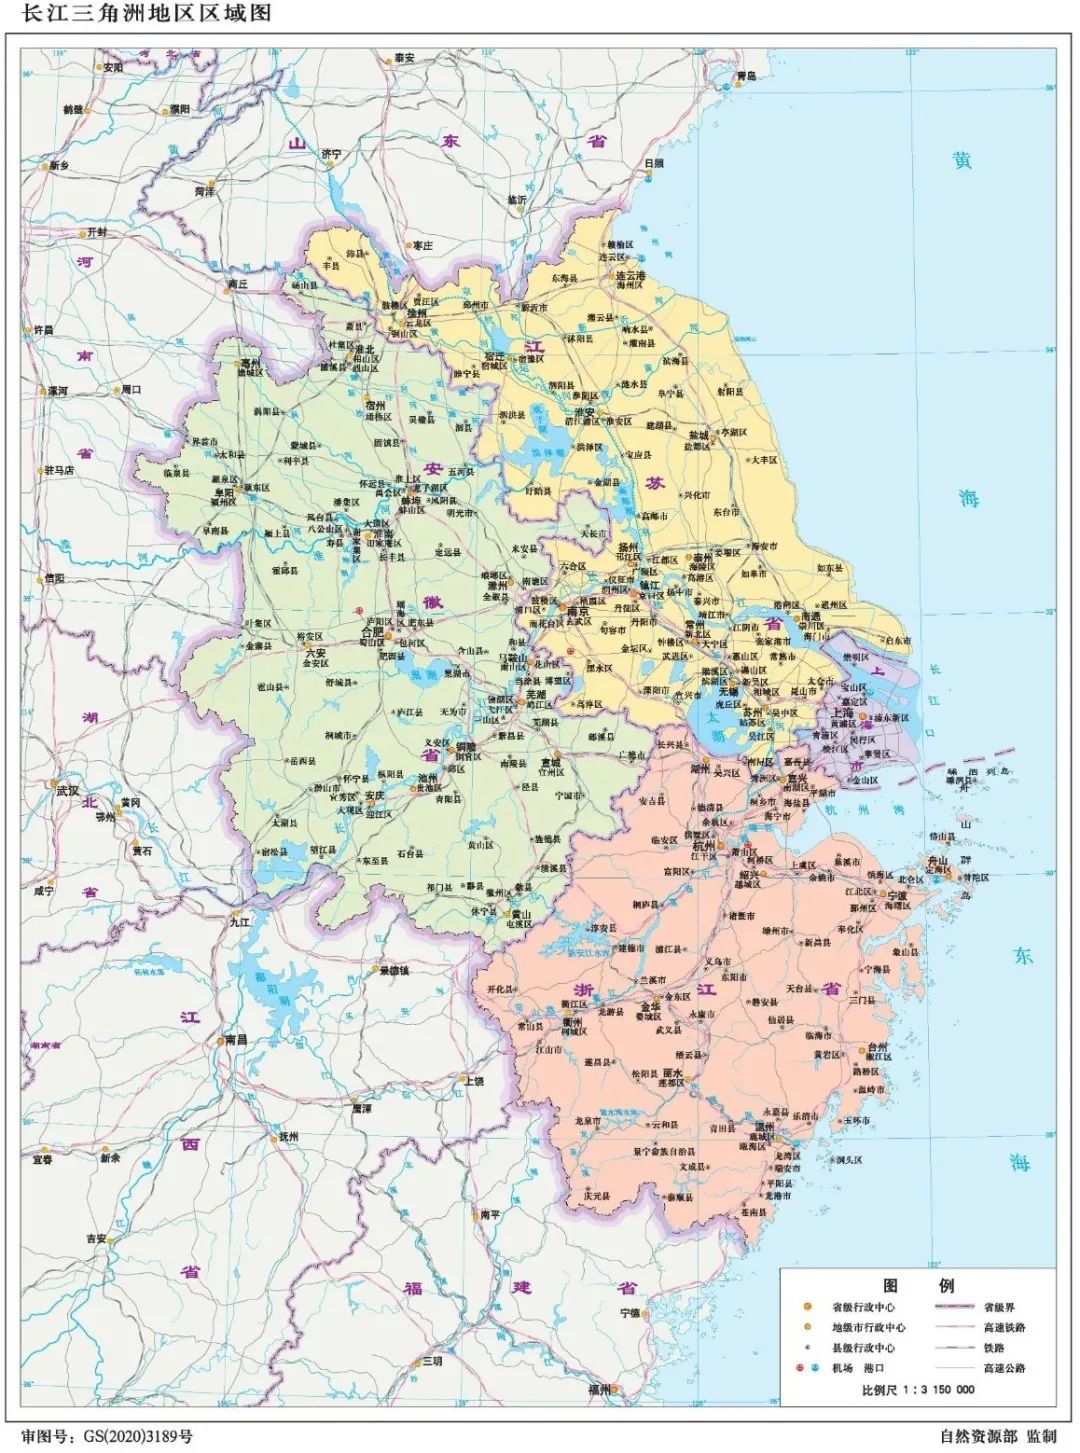 内容详情 长江三角洲地区区域图,满足涉及长三角一体化发展战略的地图